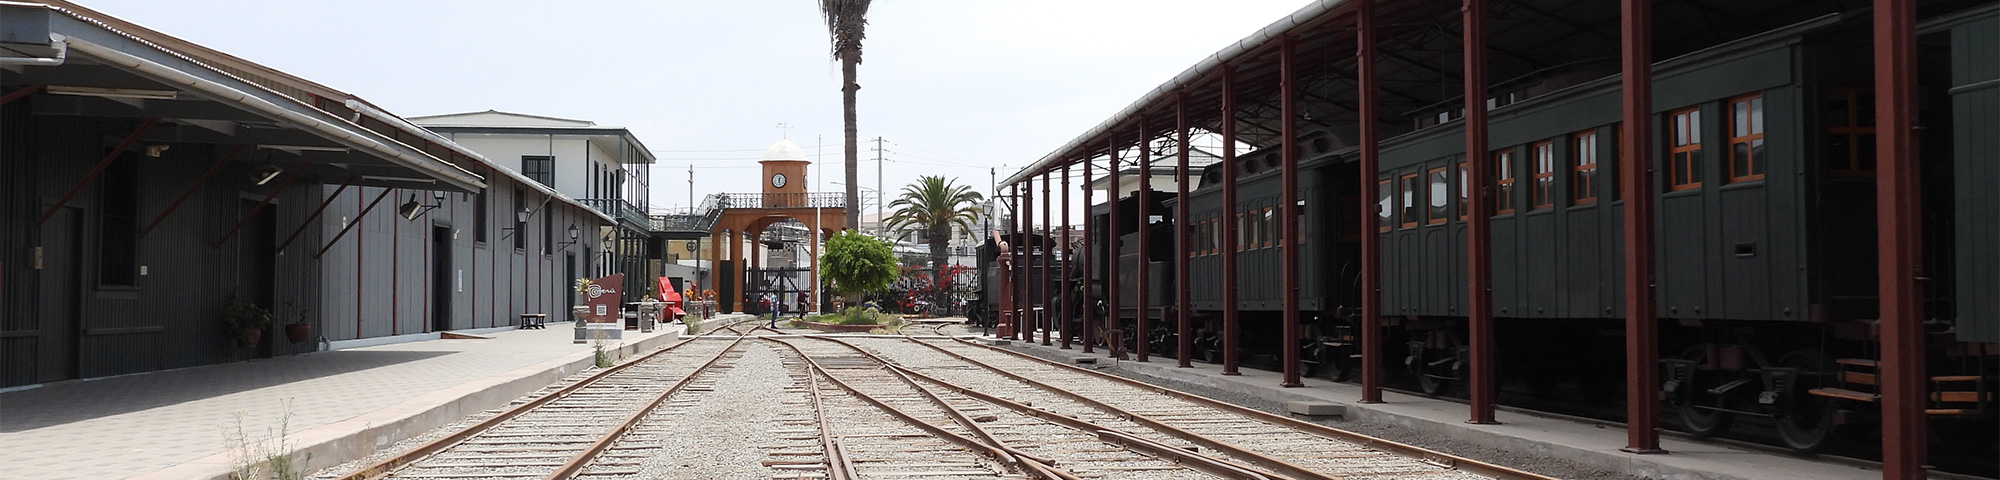 Servicio Ferroviario Tacna - Arica reanuda sus servicios